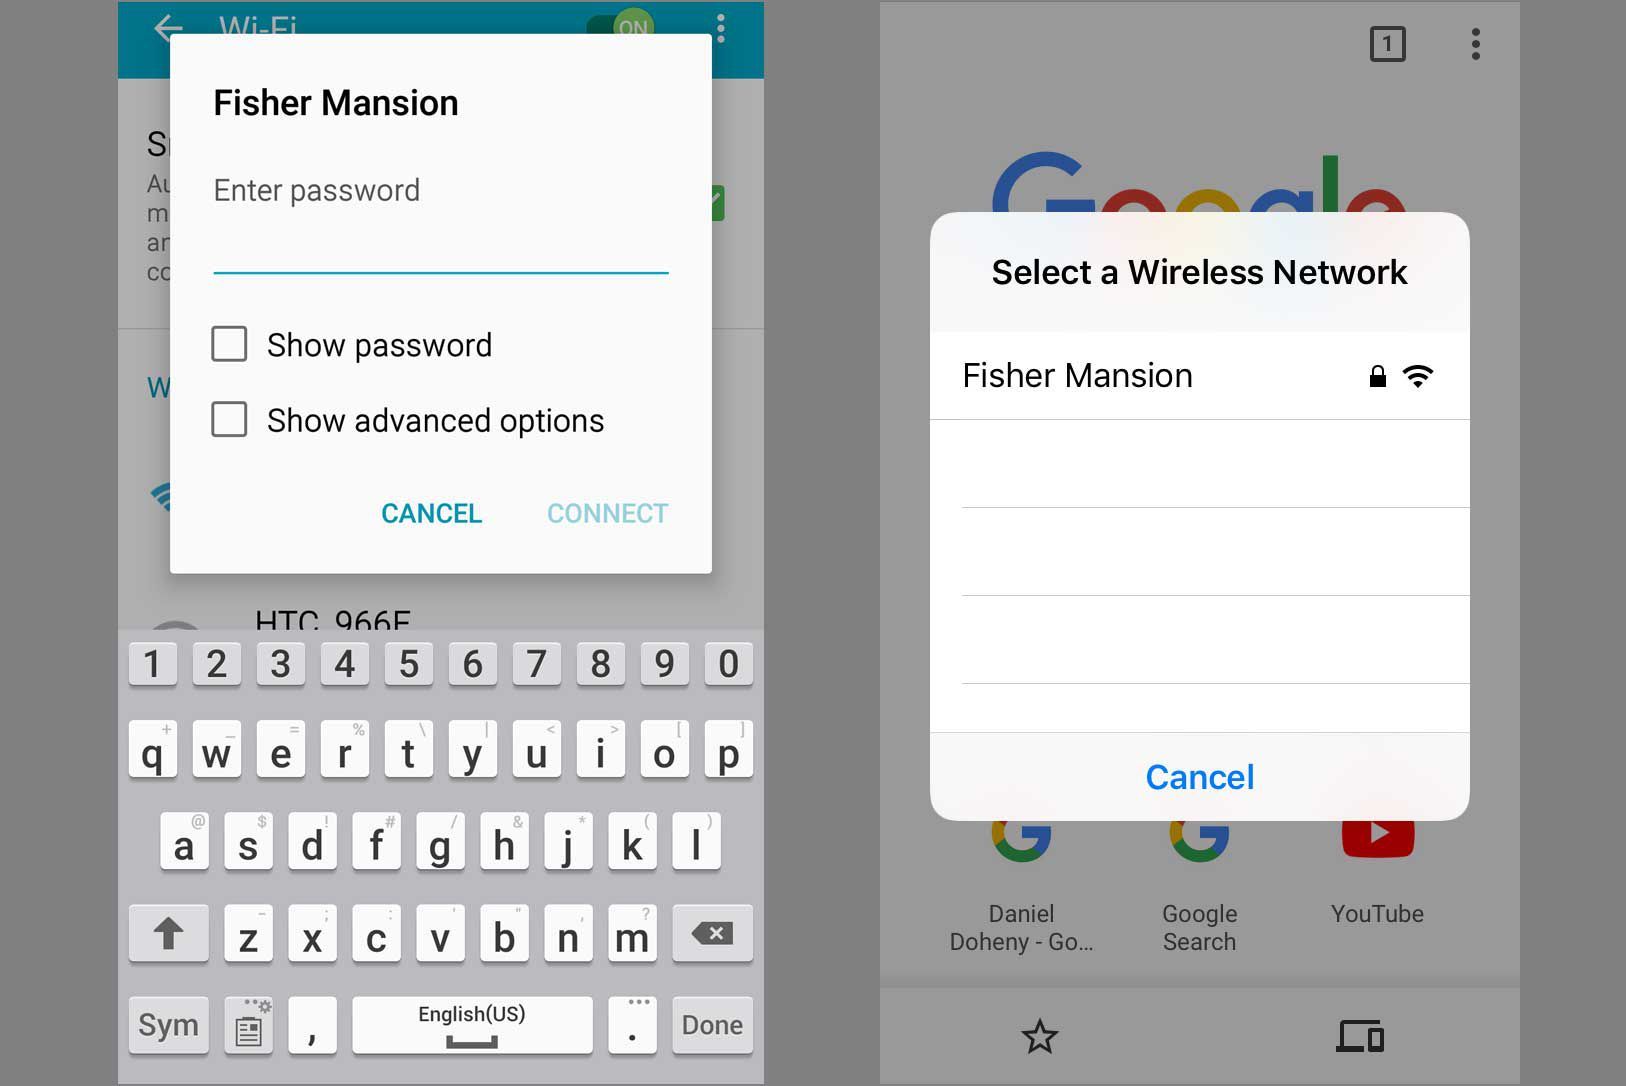 Скриншоты iPhone и Android просят присоединиться к новой сети Wi-Fi